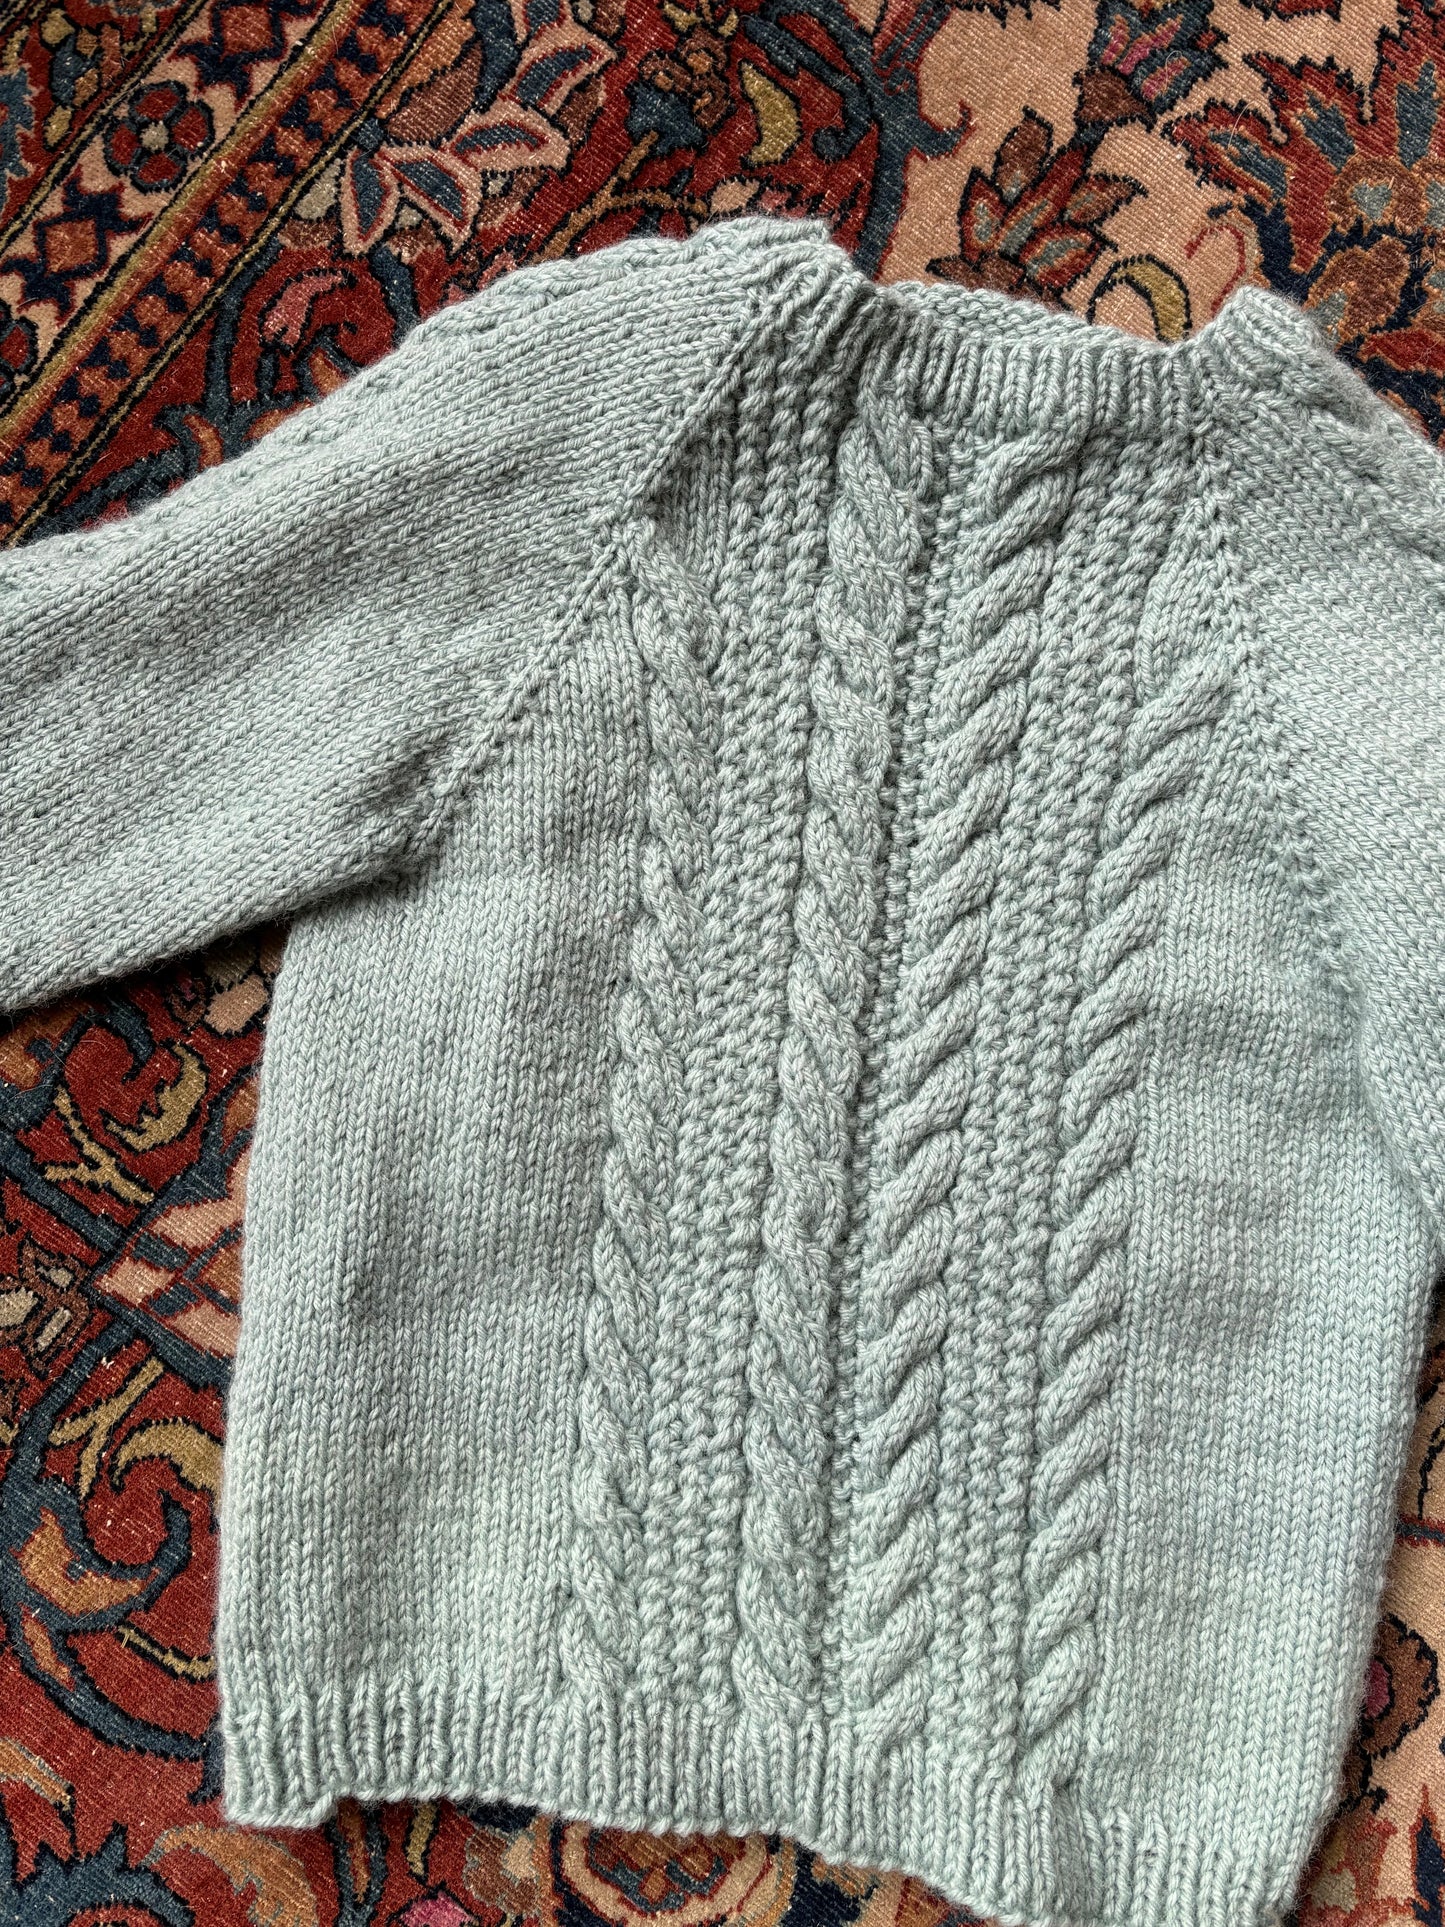 Child's Handknit Sweater